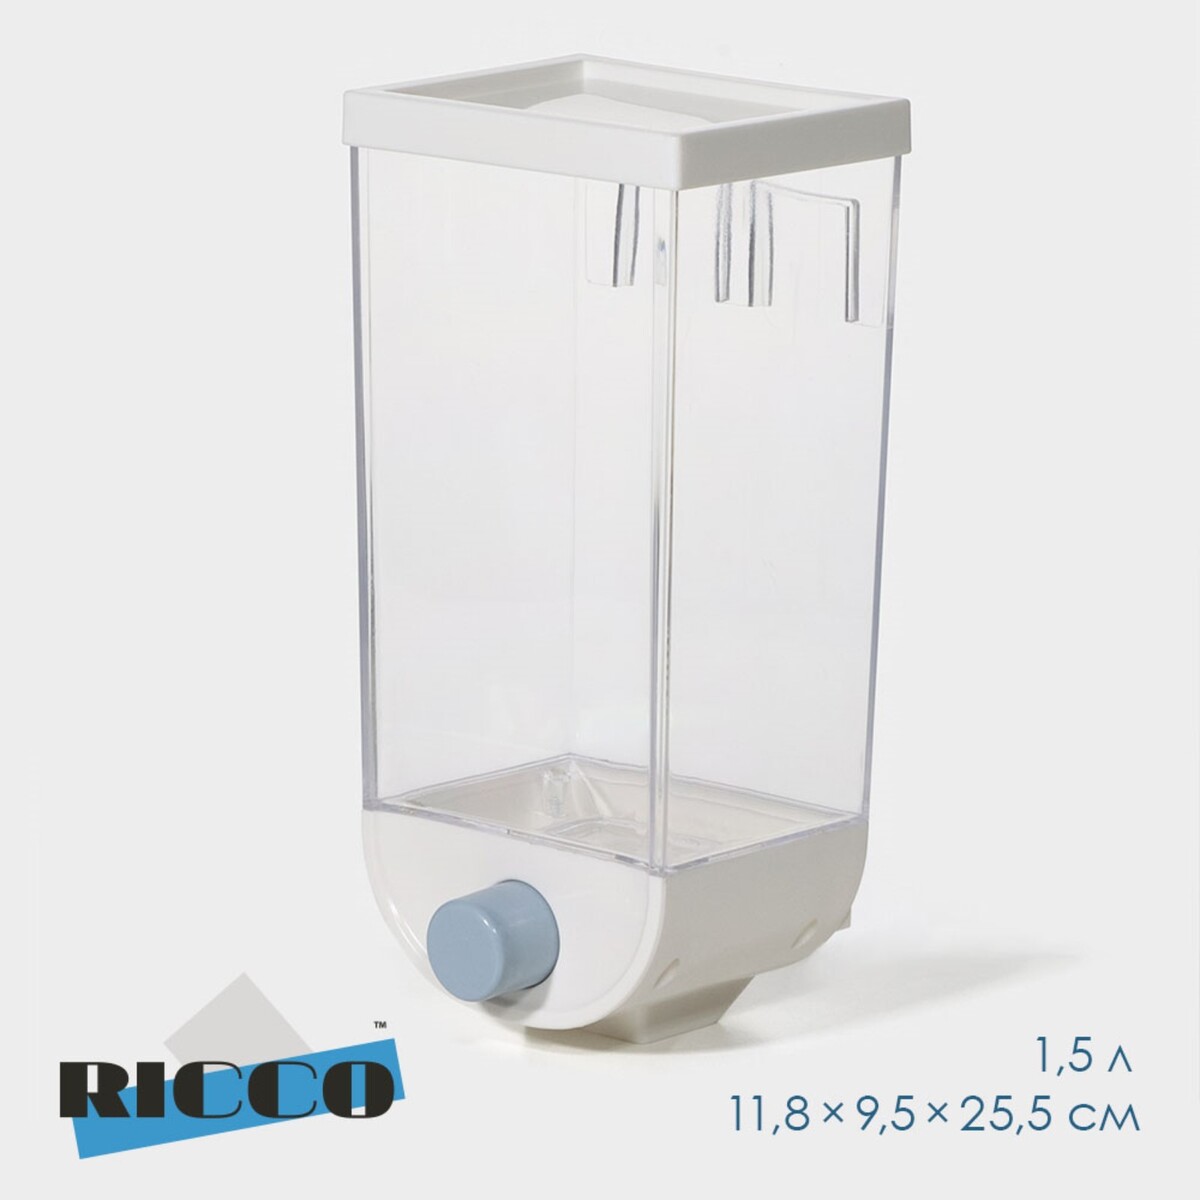 Контейнер - дозатор для хранения сыпучих ricco, 11,8×9,5×25,5 см, 1,5 л, цвет белый контейнер пищевой ricco 17 л 46×31×17 см прямоугольный прозрачный голубой